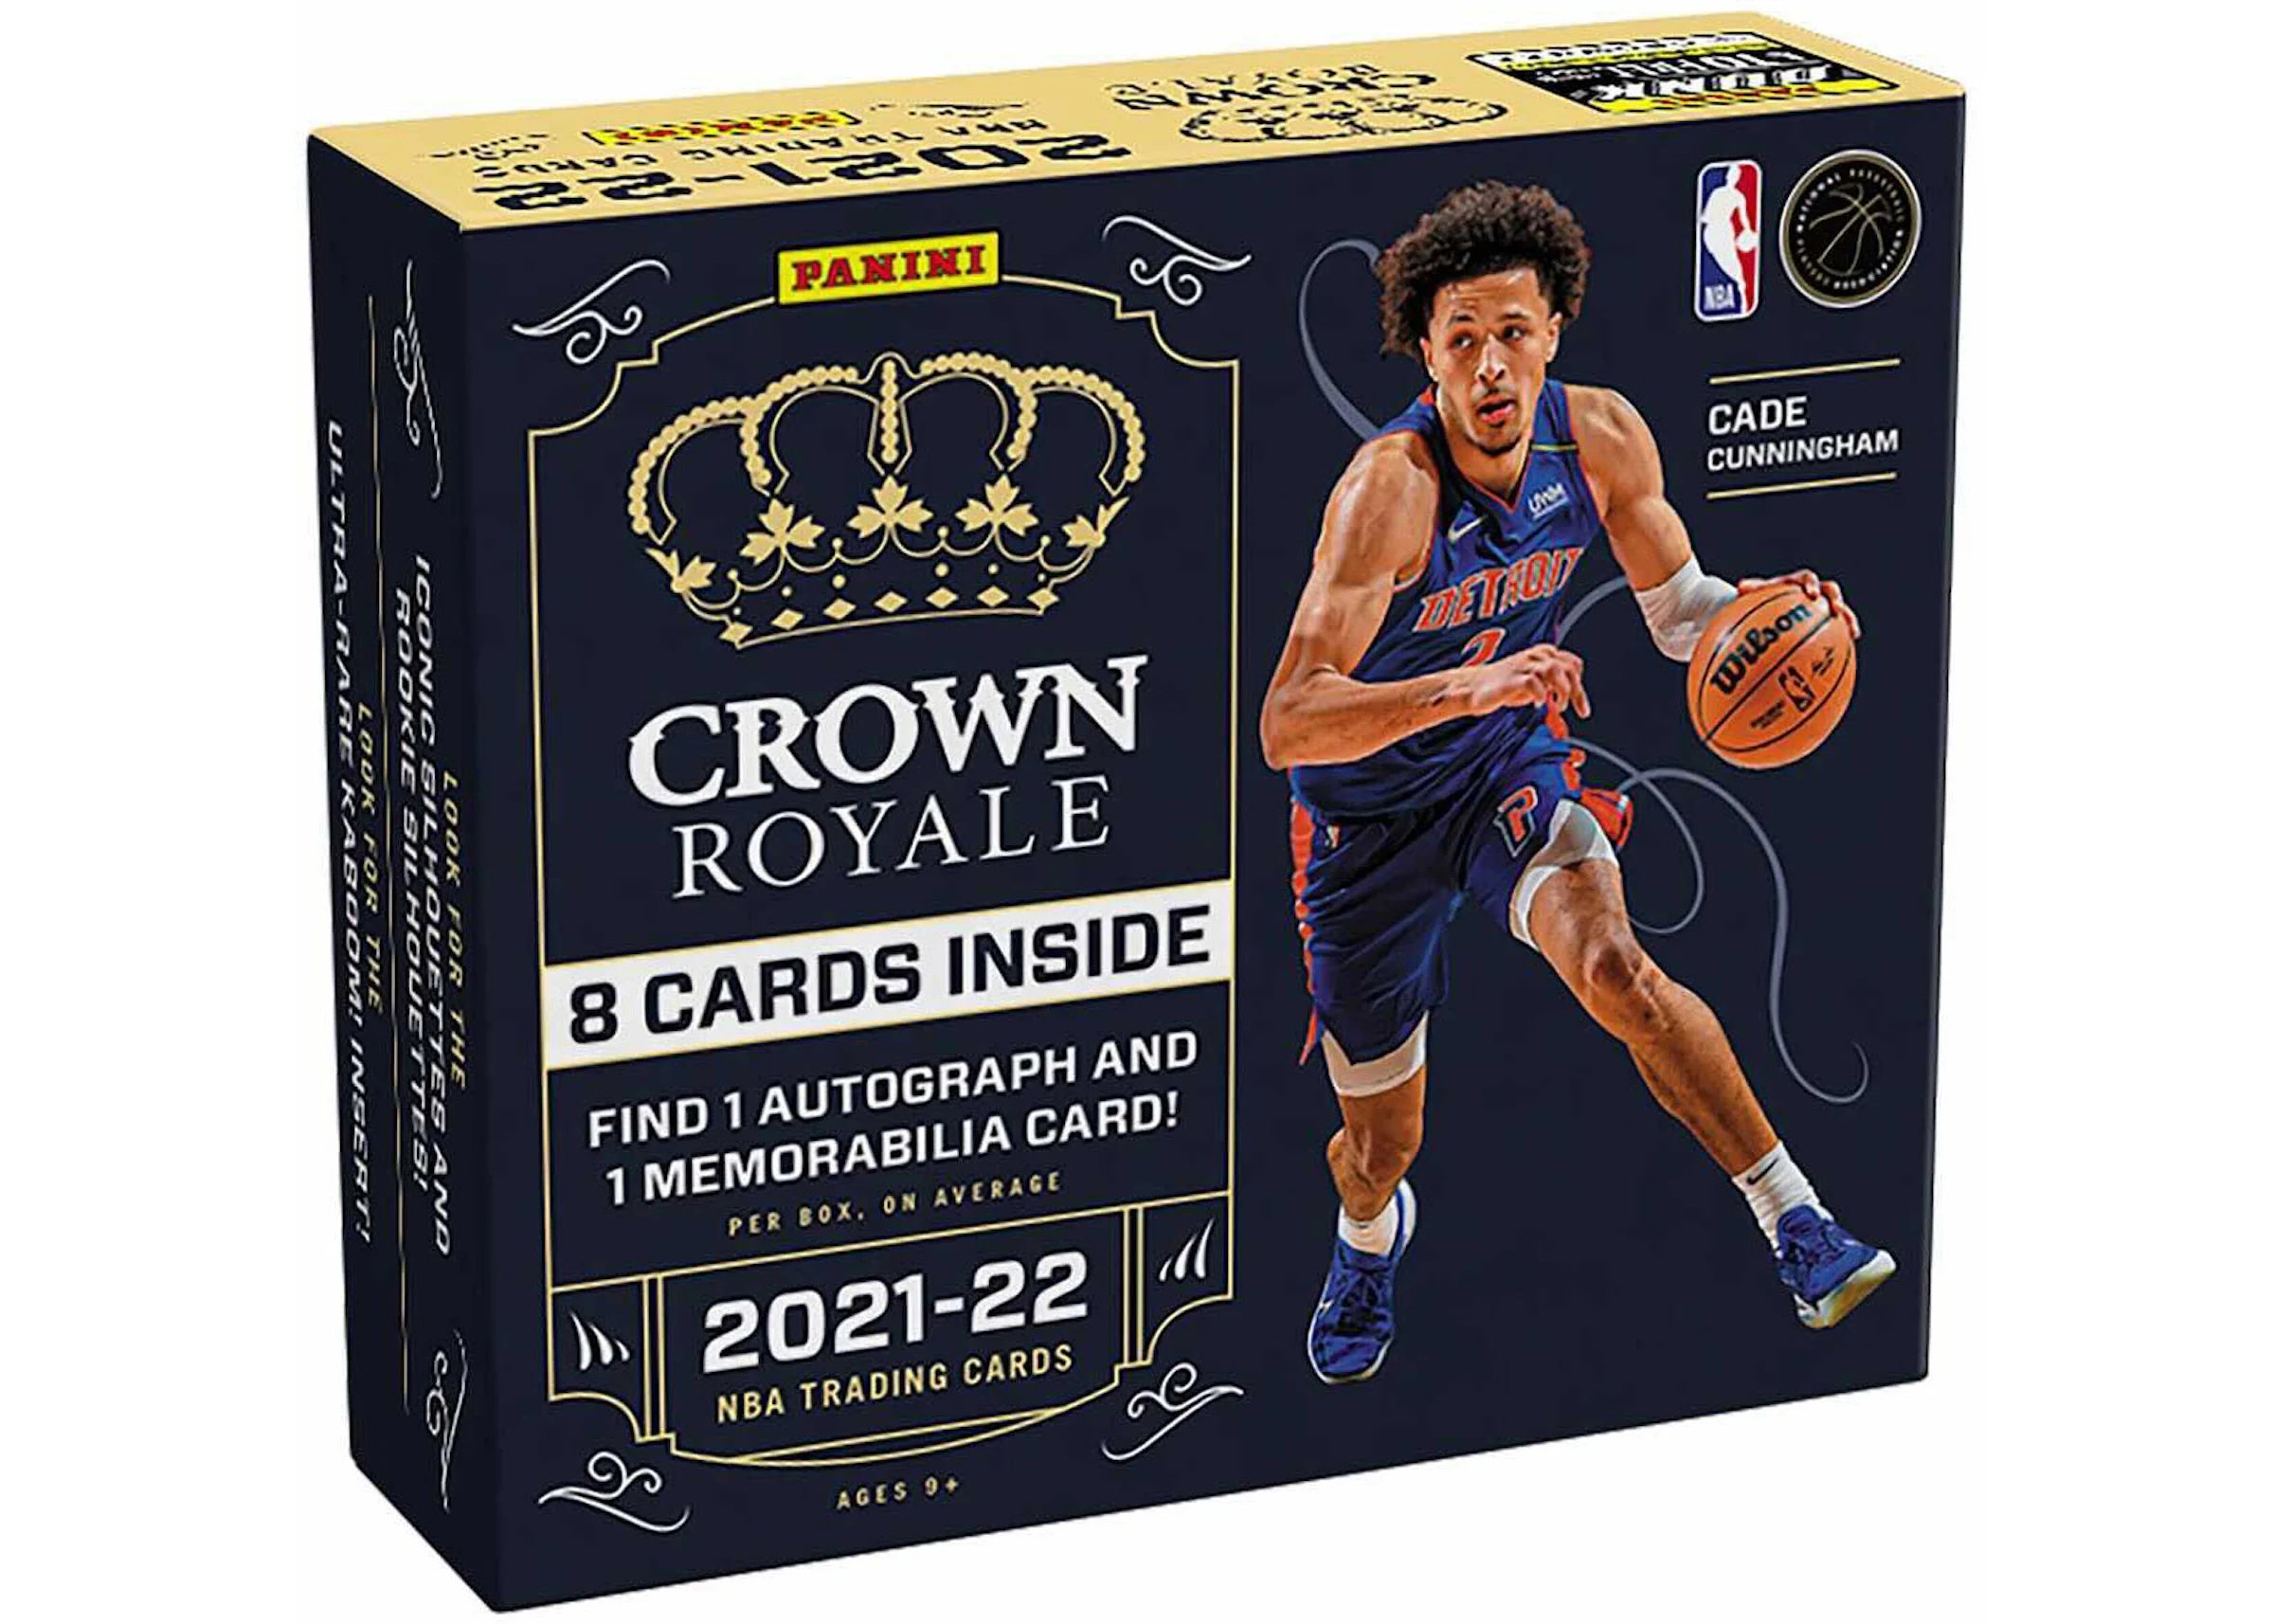 2021-22 Panini NBA Crown Royale Basketball Hobby Box